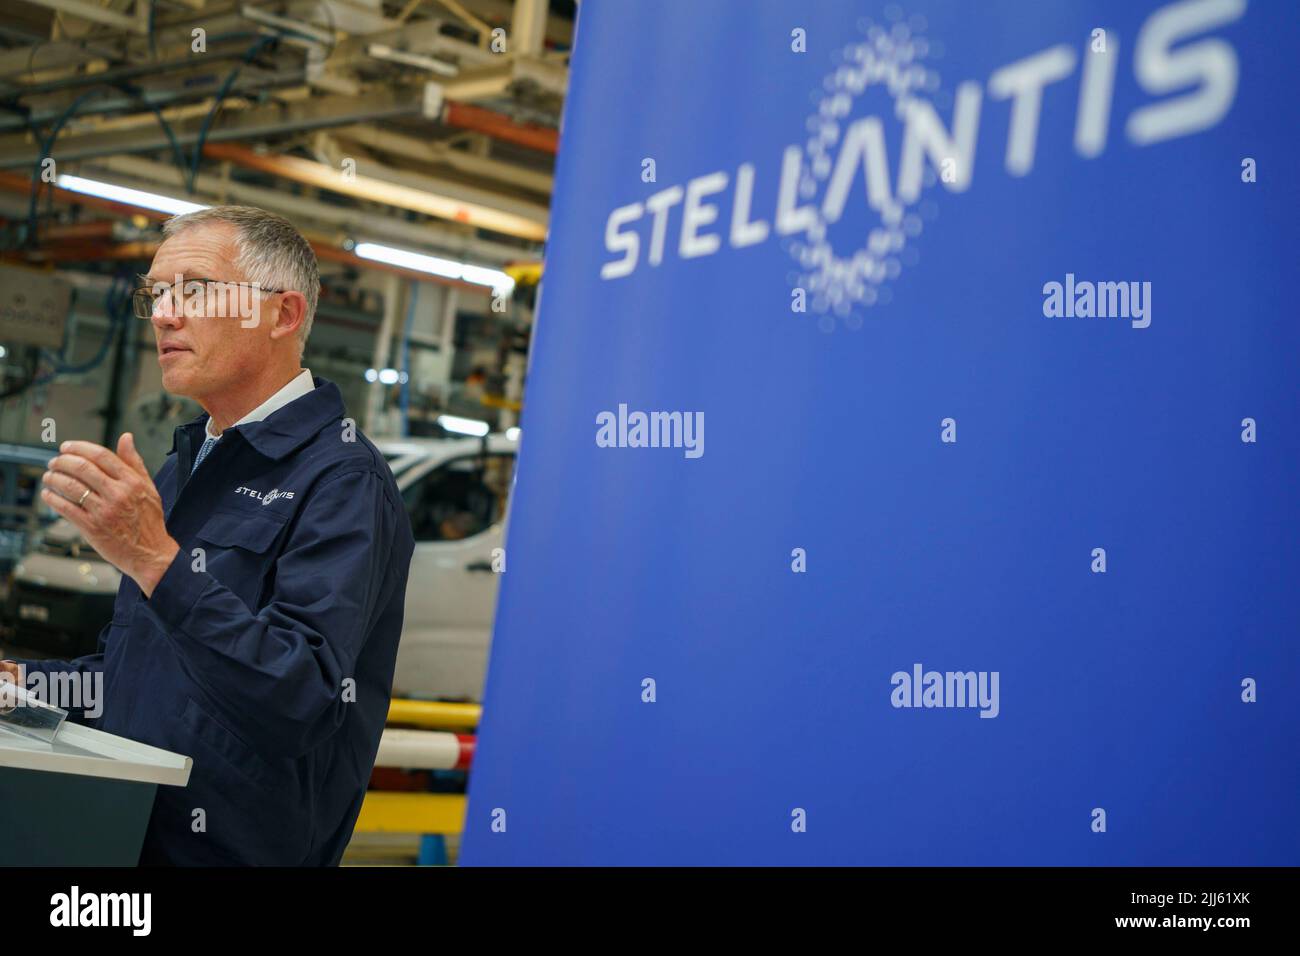 Carlos Tavares - Amministratore Delegato della società automobilistica Stellantis (Peugeot, Citroen, Fiat, Chrysler) Foto Stock